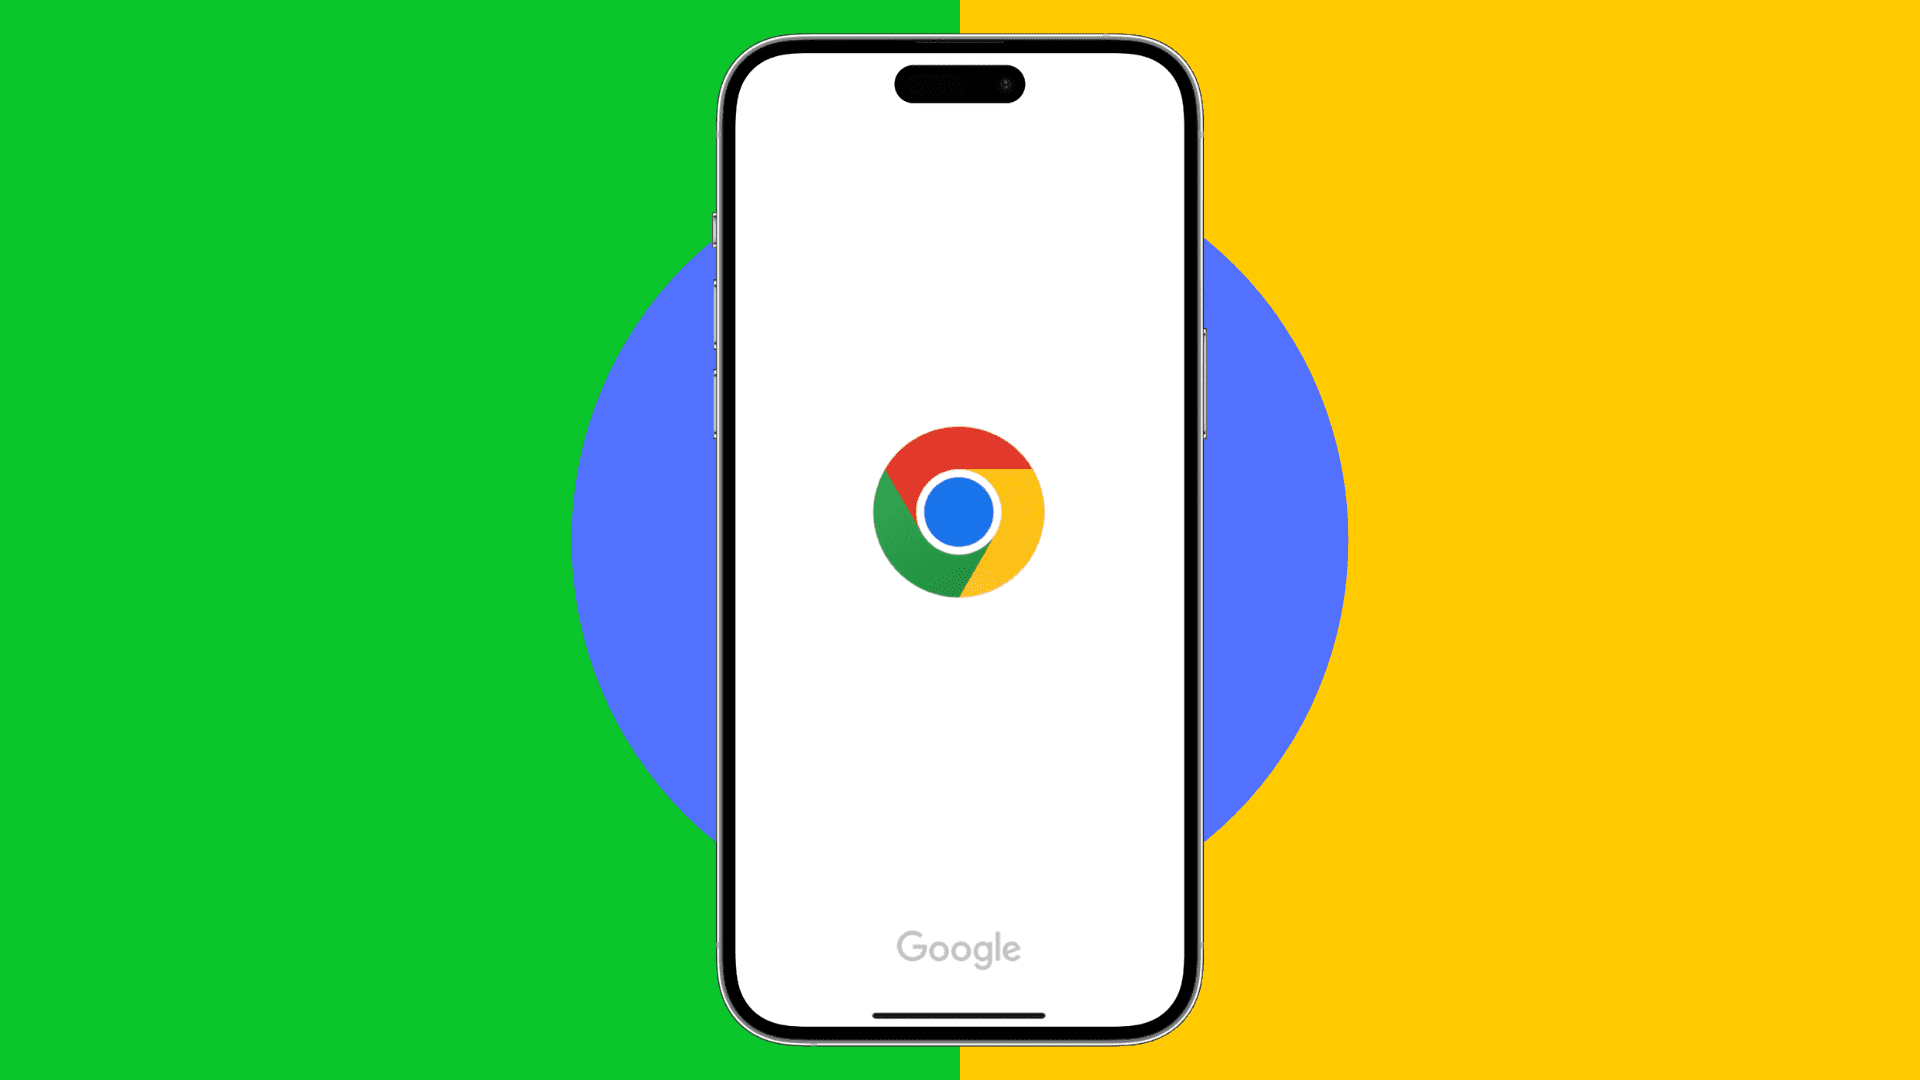 Chrome on iPhone